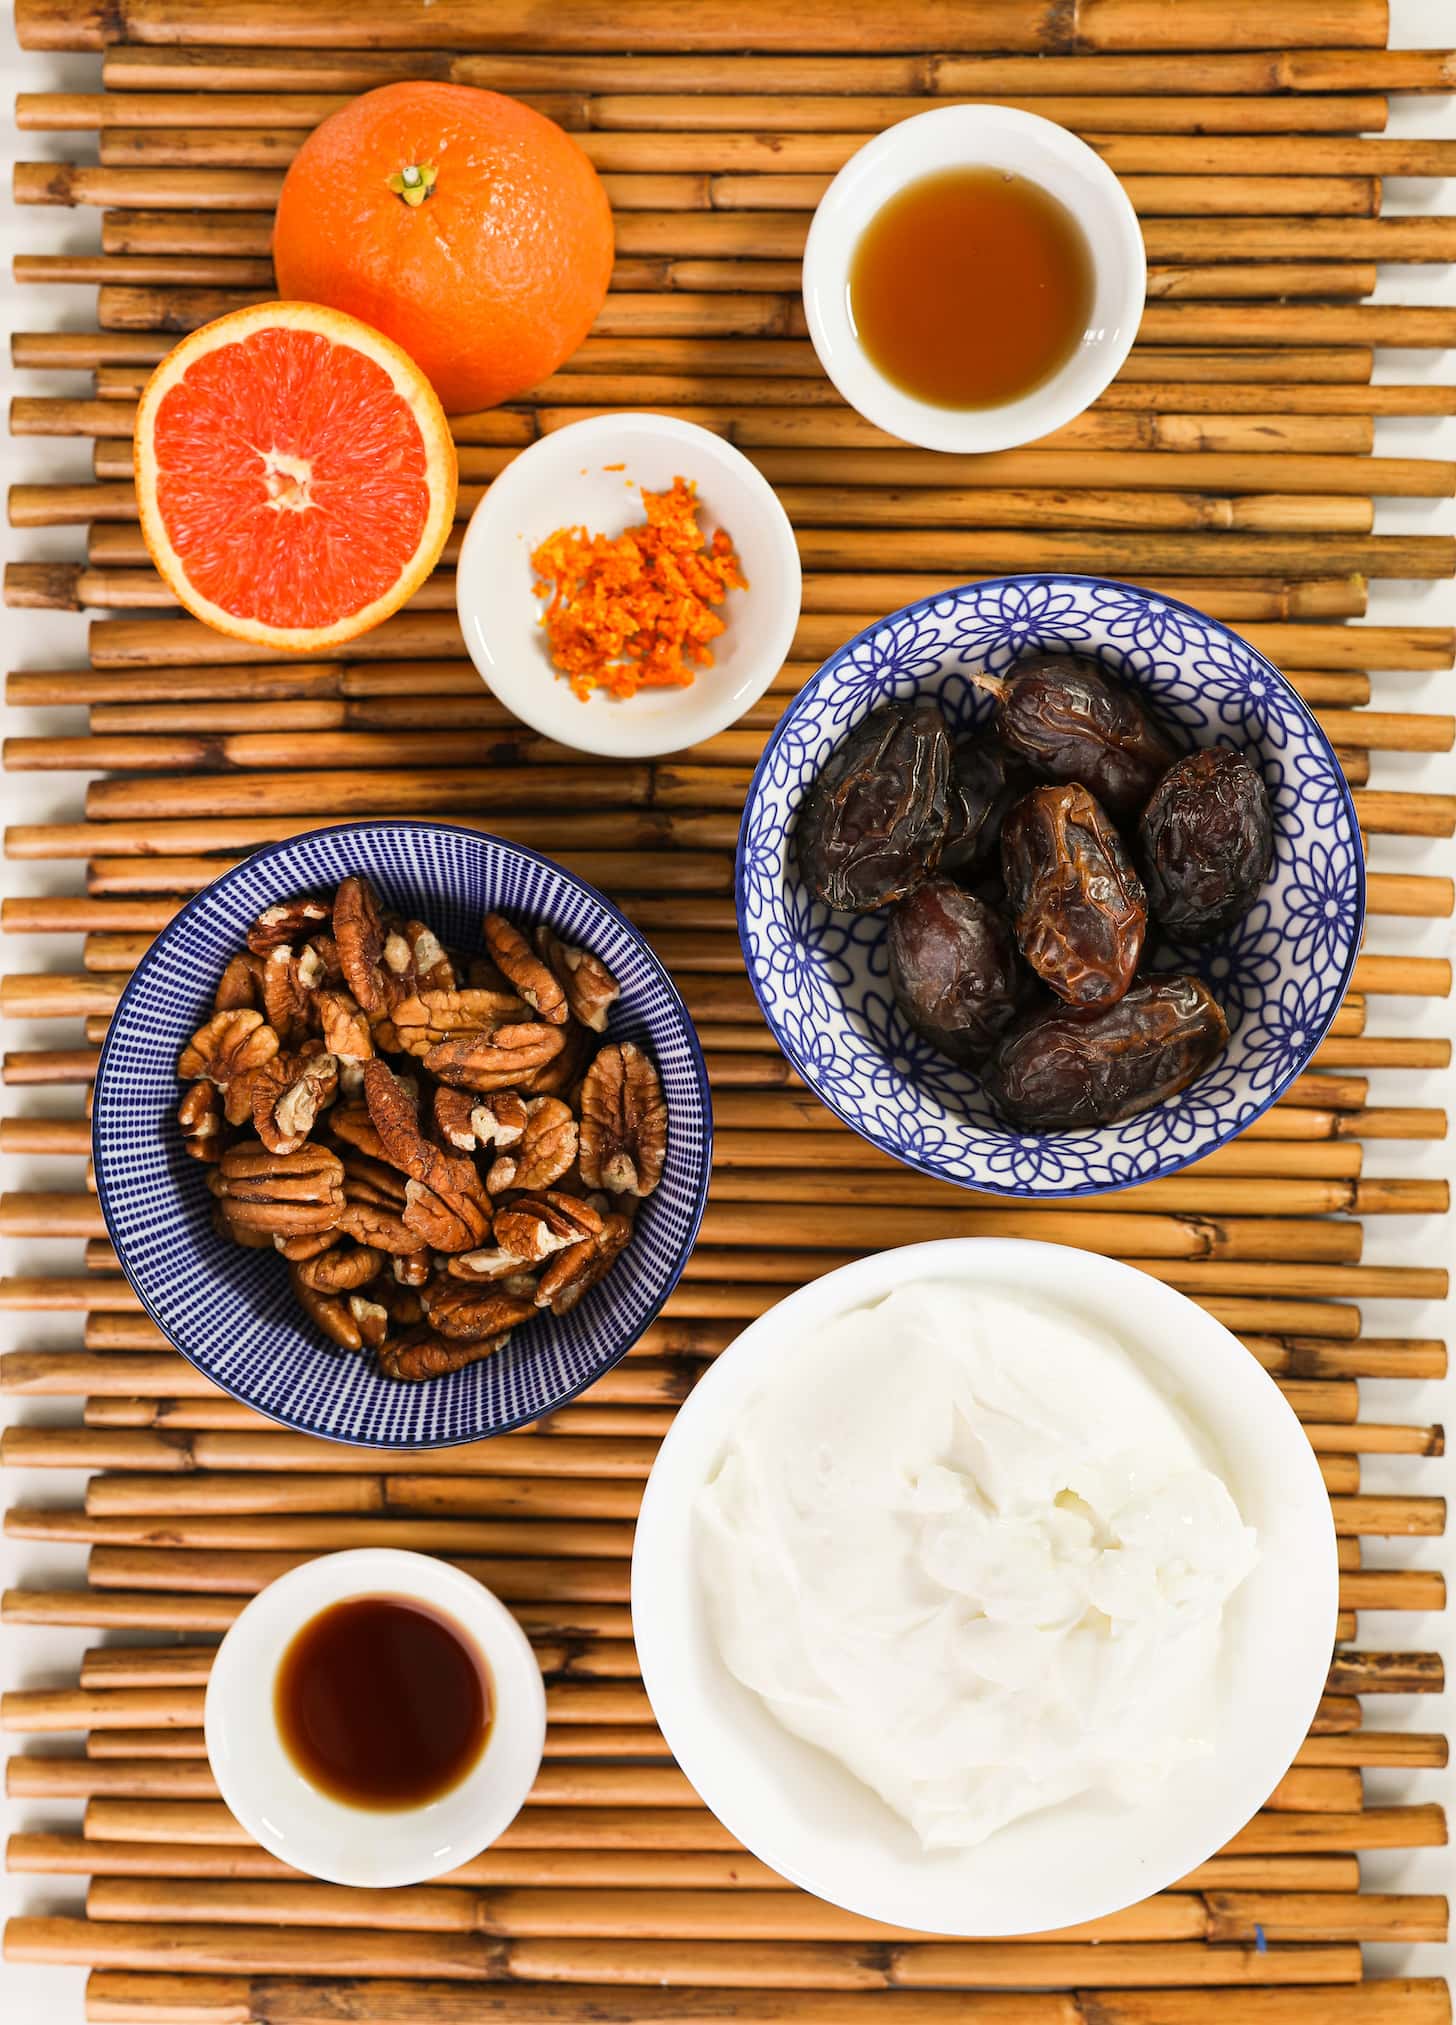 ramekins of ingredients filled with dates, pecans, yogurt, brown liquids and orange zest.